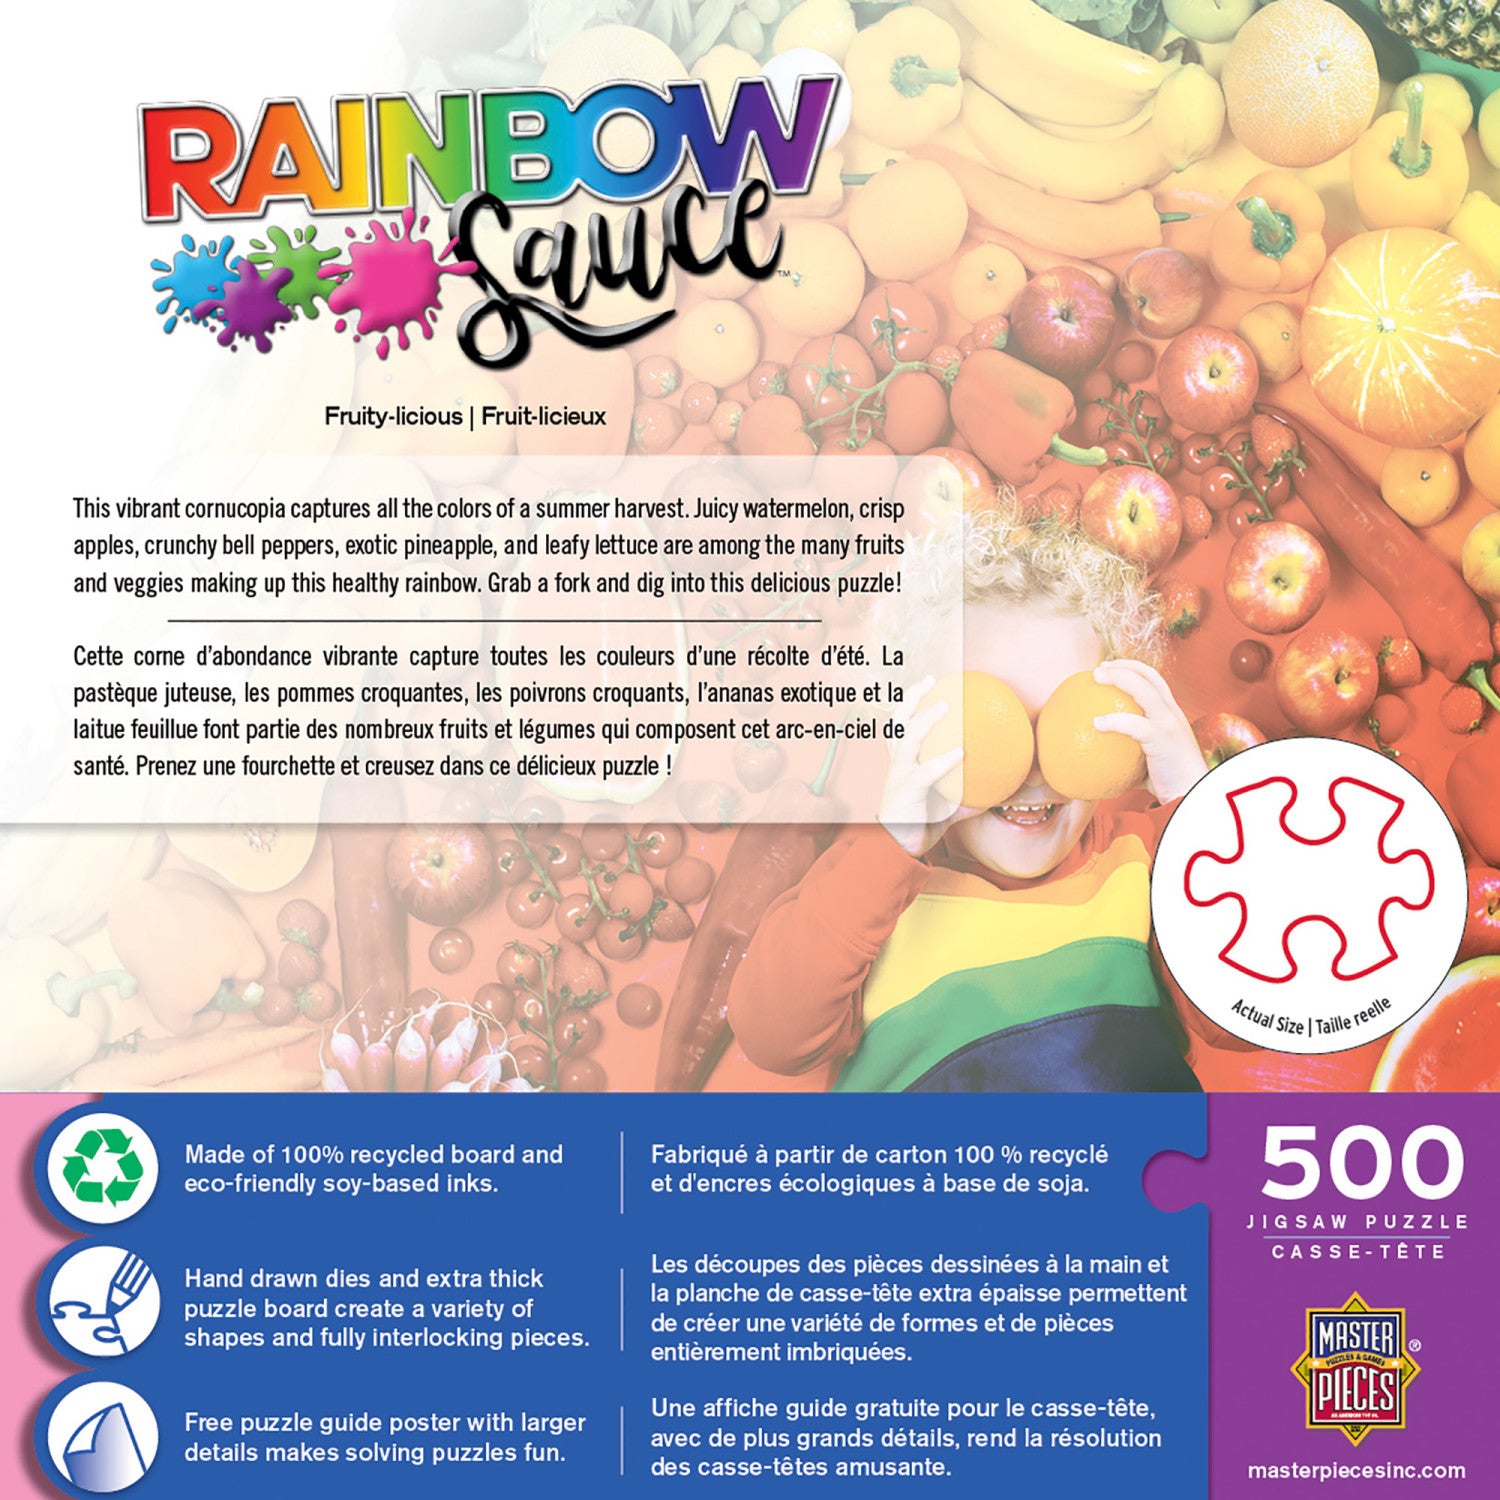 Rainbow Sauce - Fruity-licious 500 Piece Jigsaw Puzzle